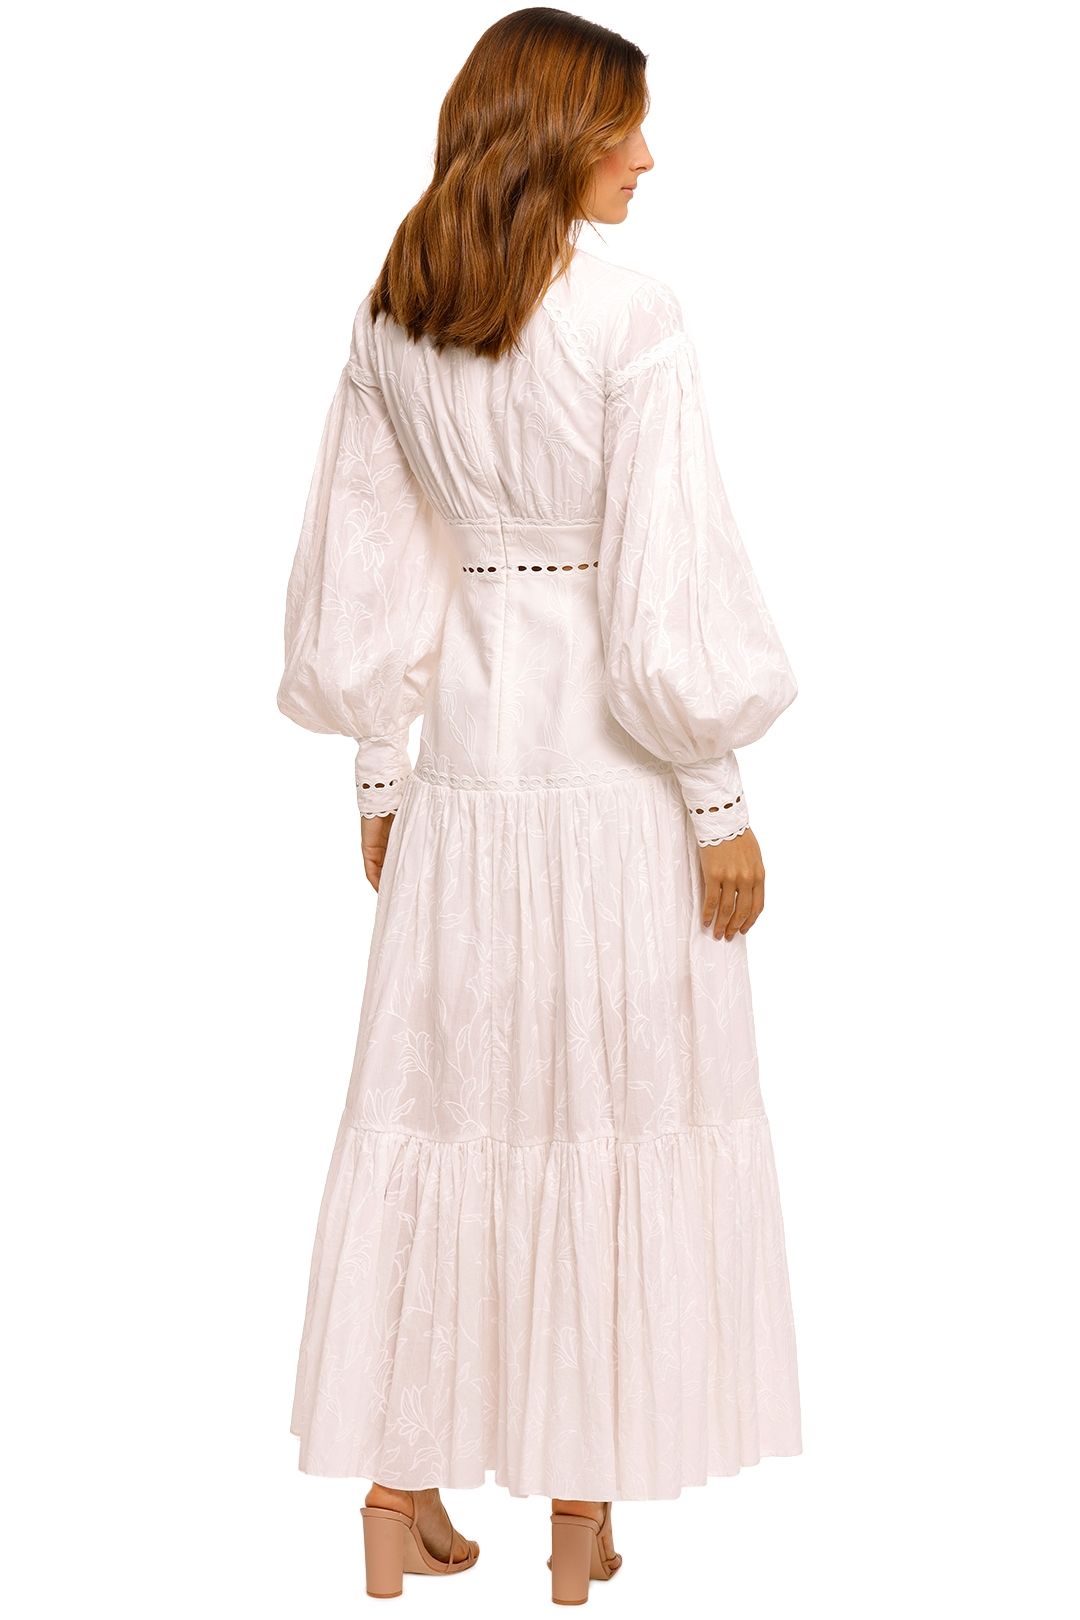 Acler Hender Dress Ivory white